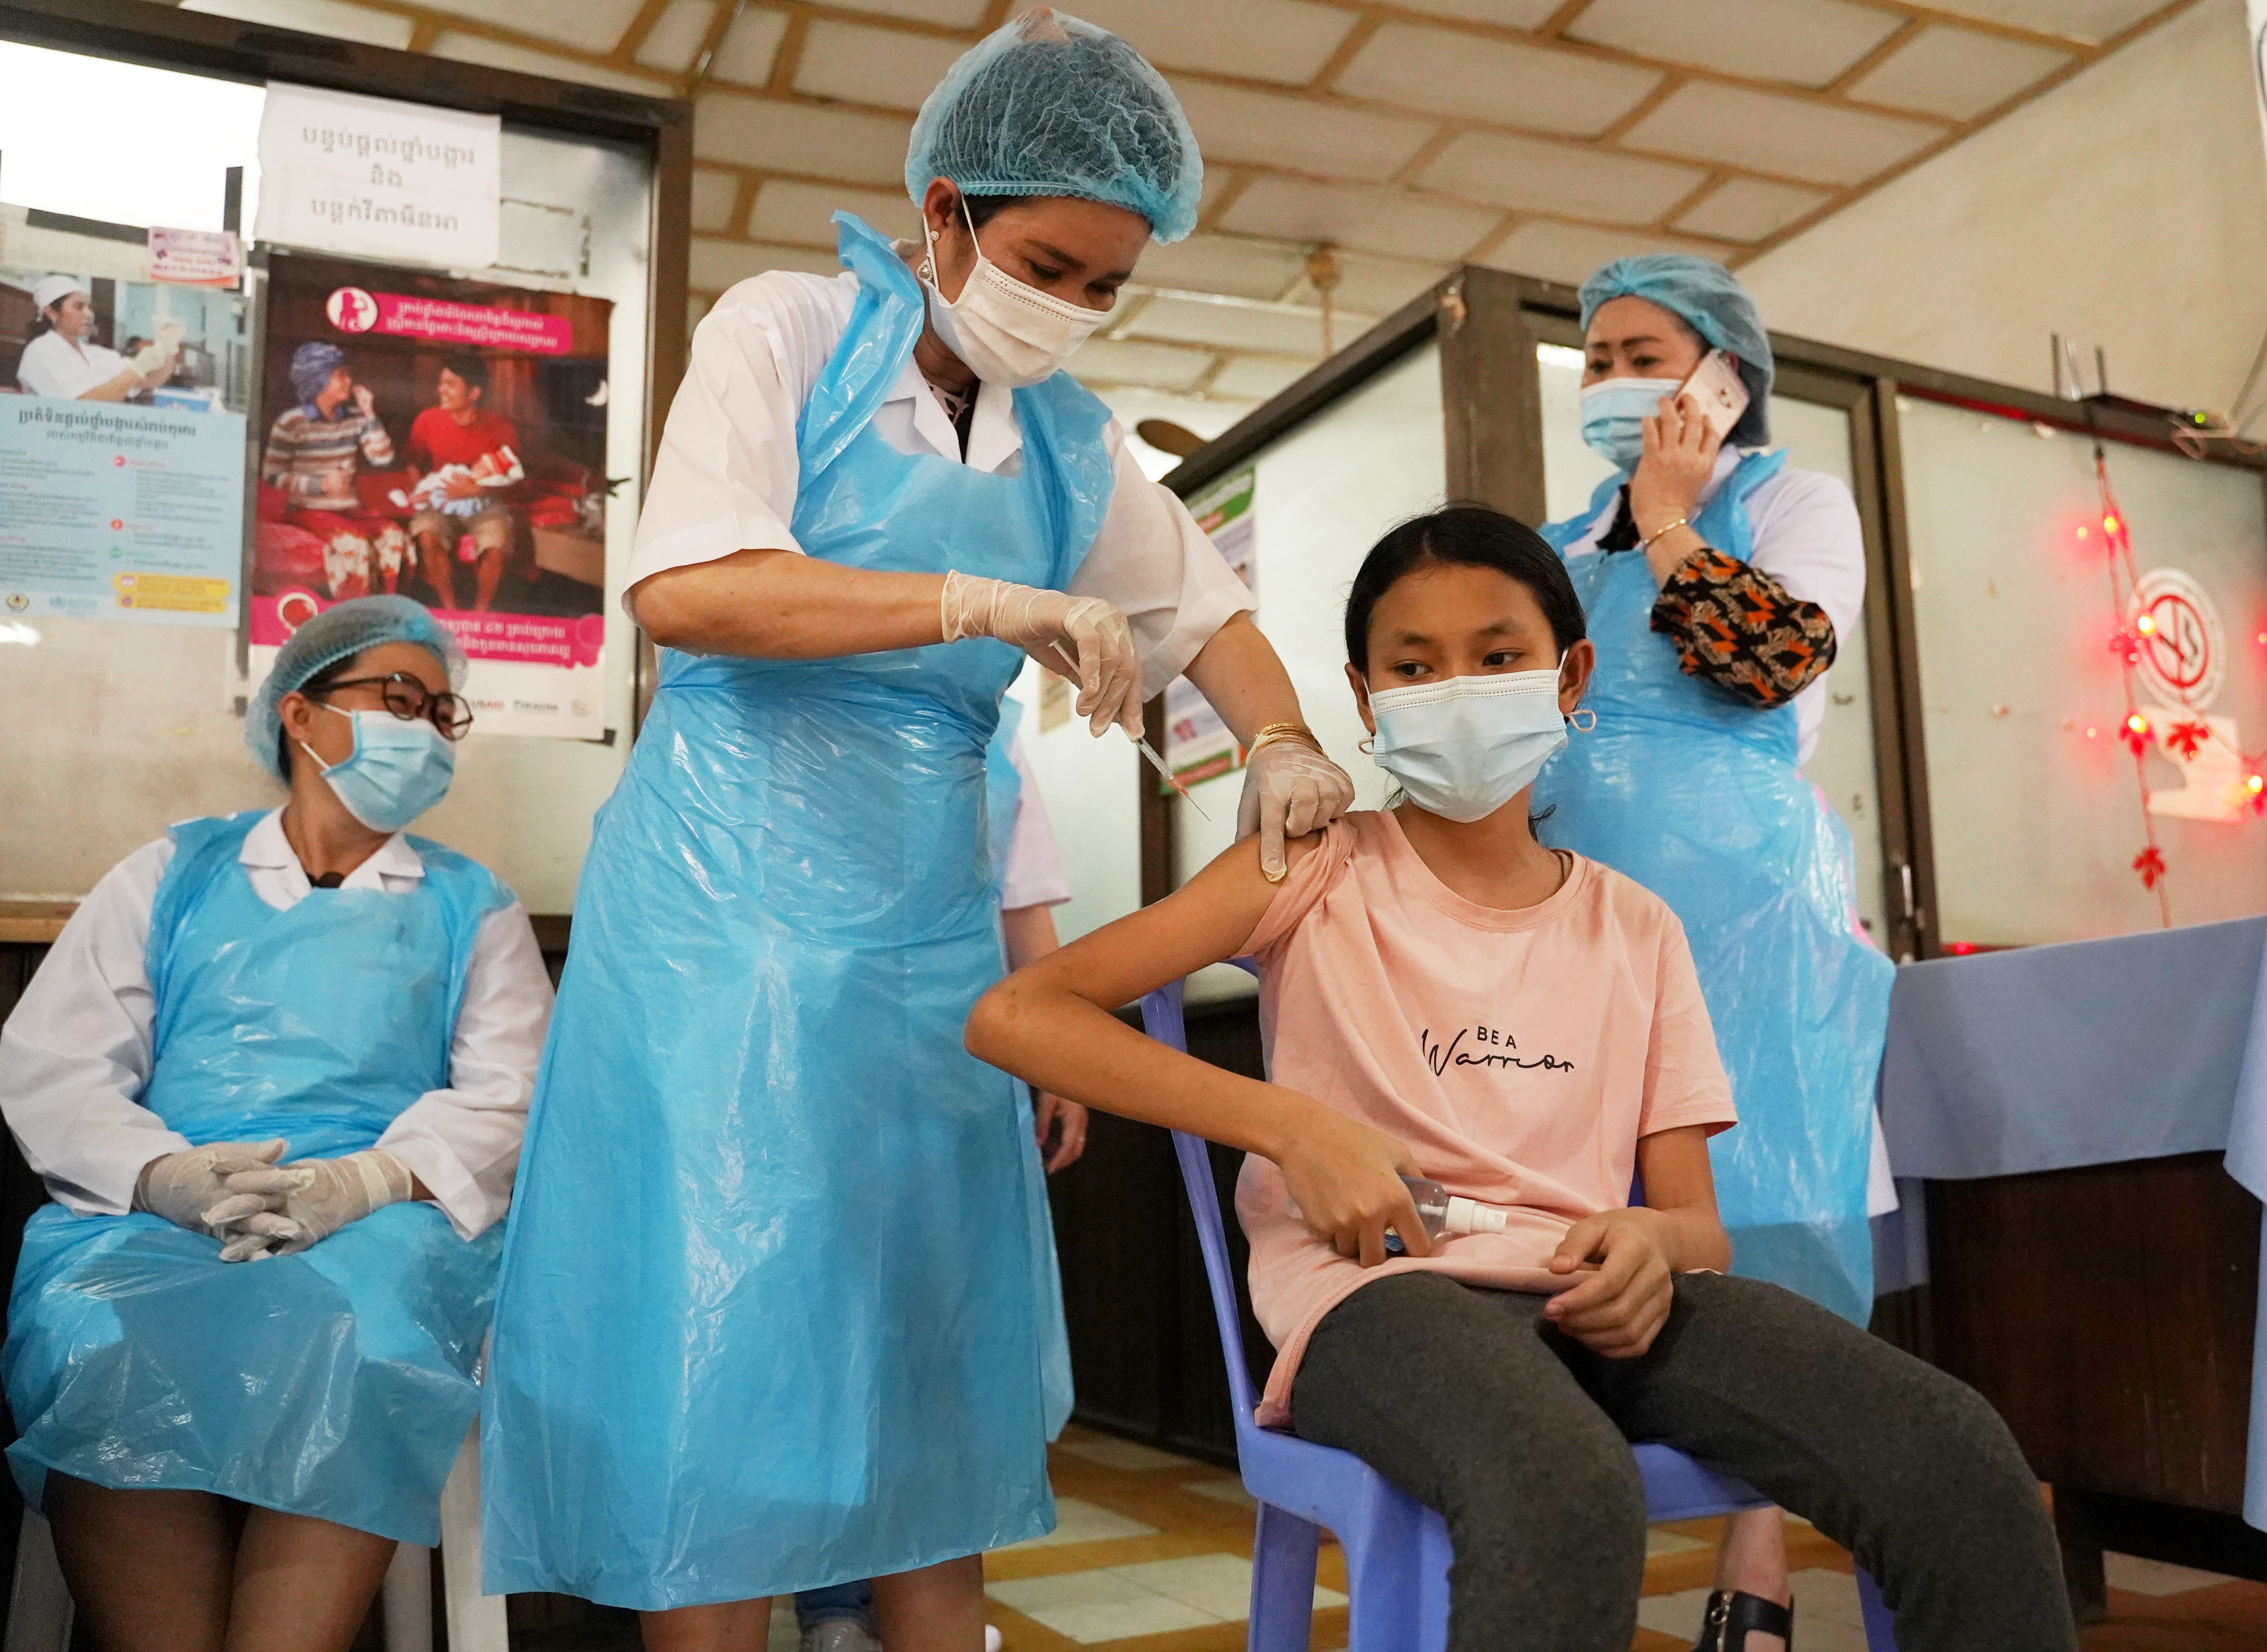 Ya varios países vacunan a los adolescentes contra el COVID-19. Pero no todos los países están de acuerdo. Podría ser una barrera para alcanzar la inmunidad de rebaño/REUTERS/Cindy Liu